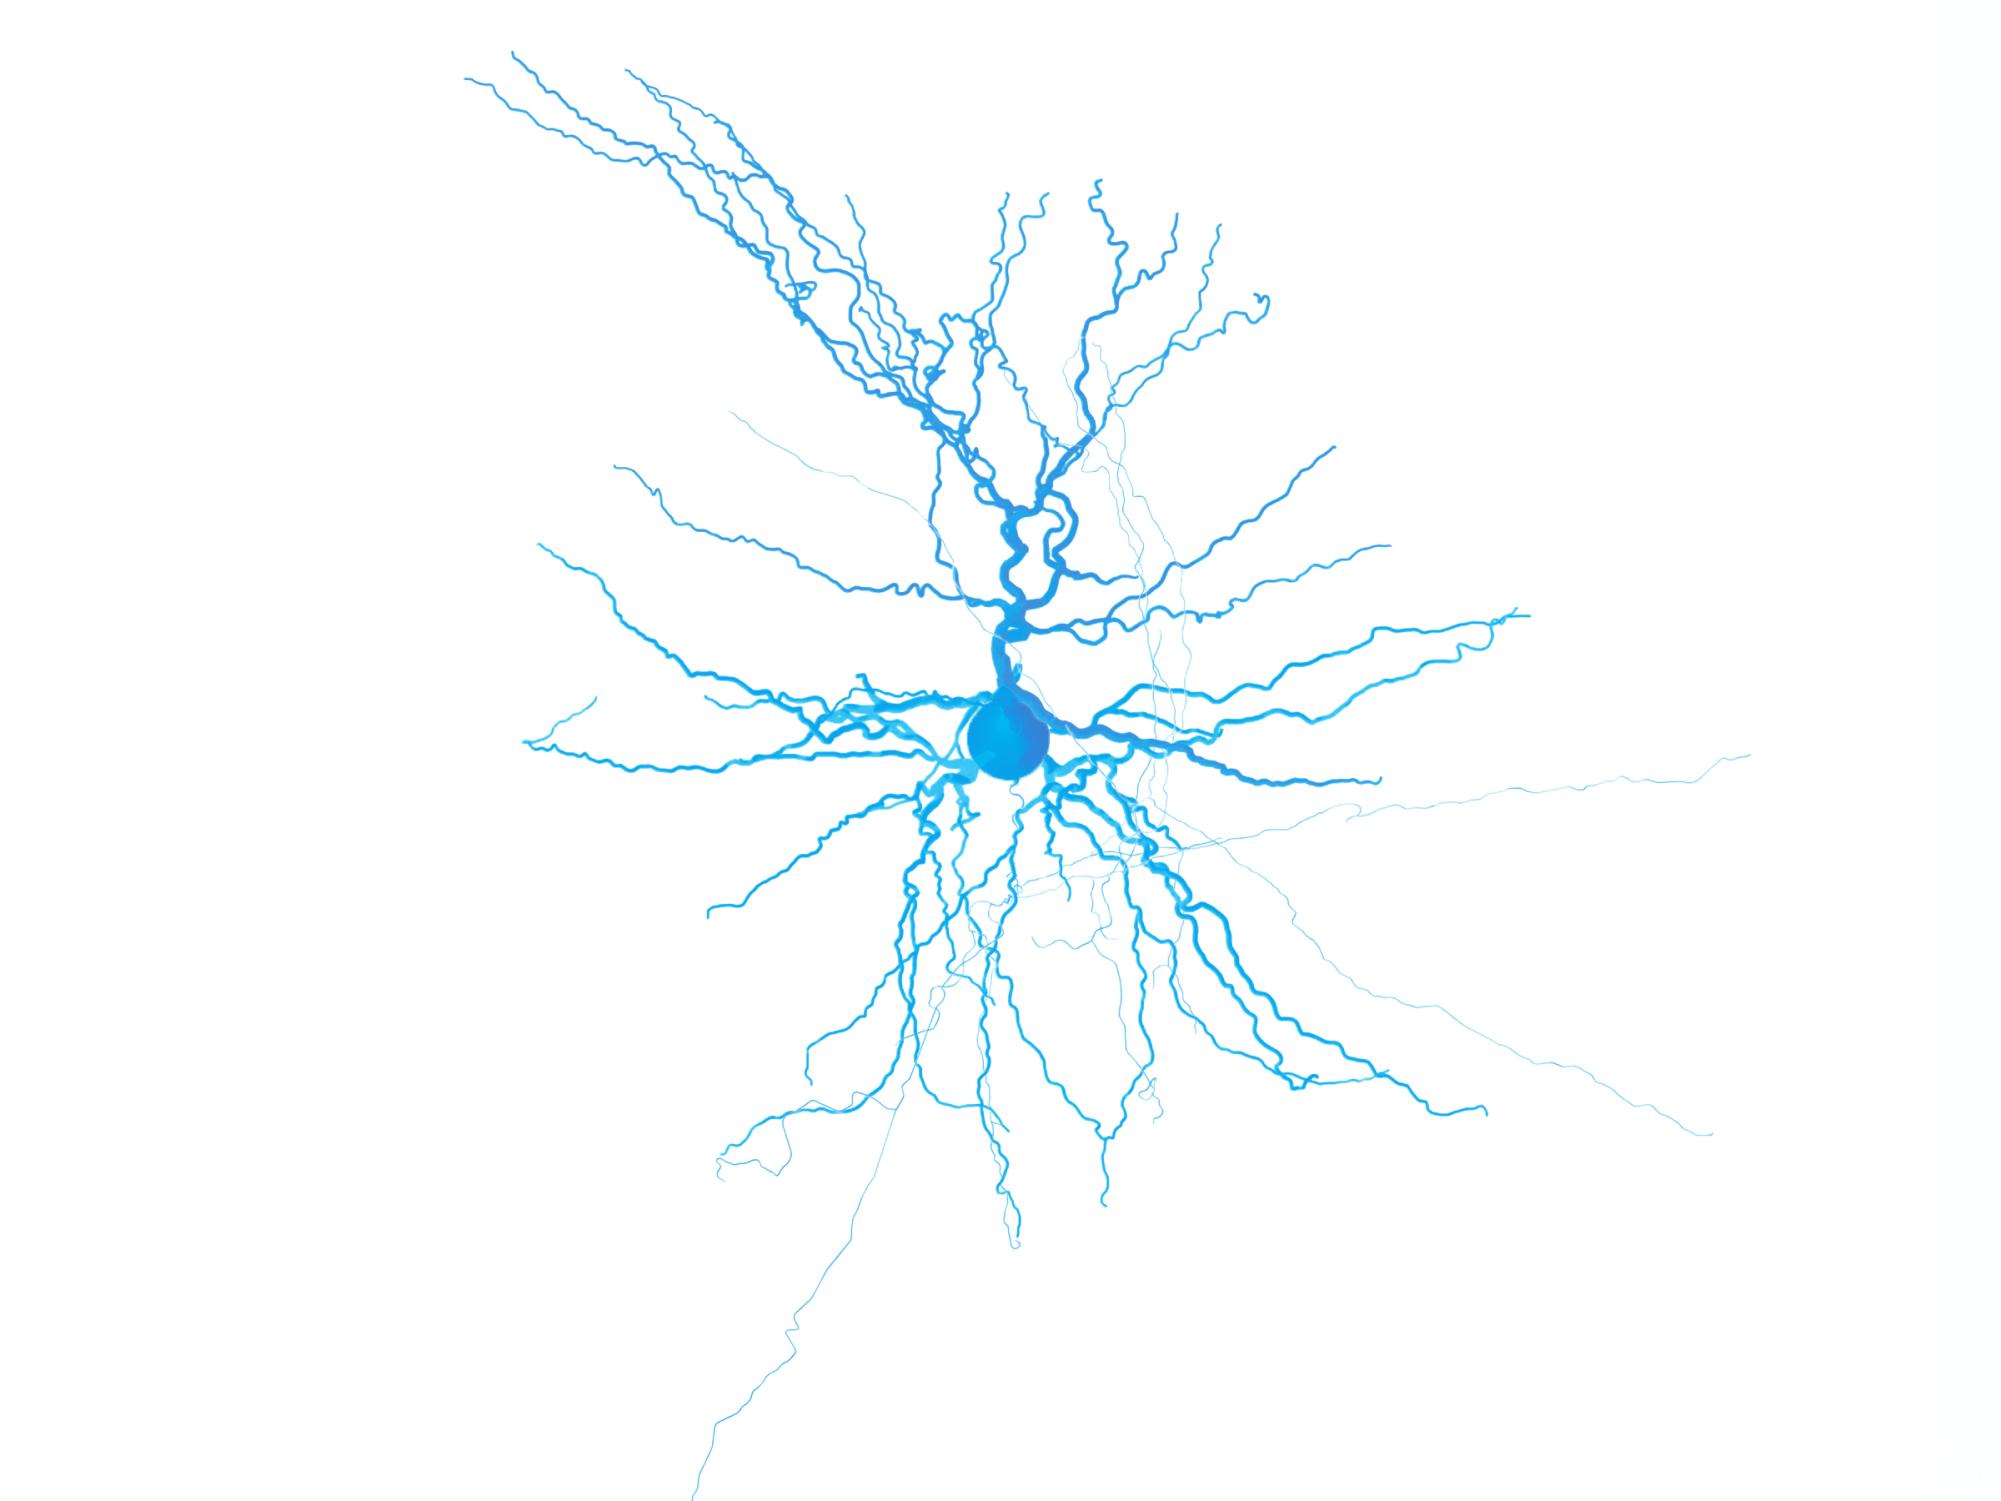 Brain neuron.